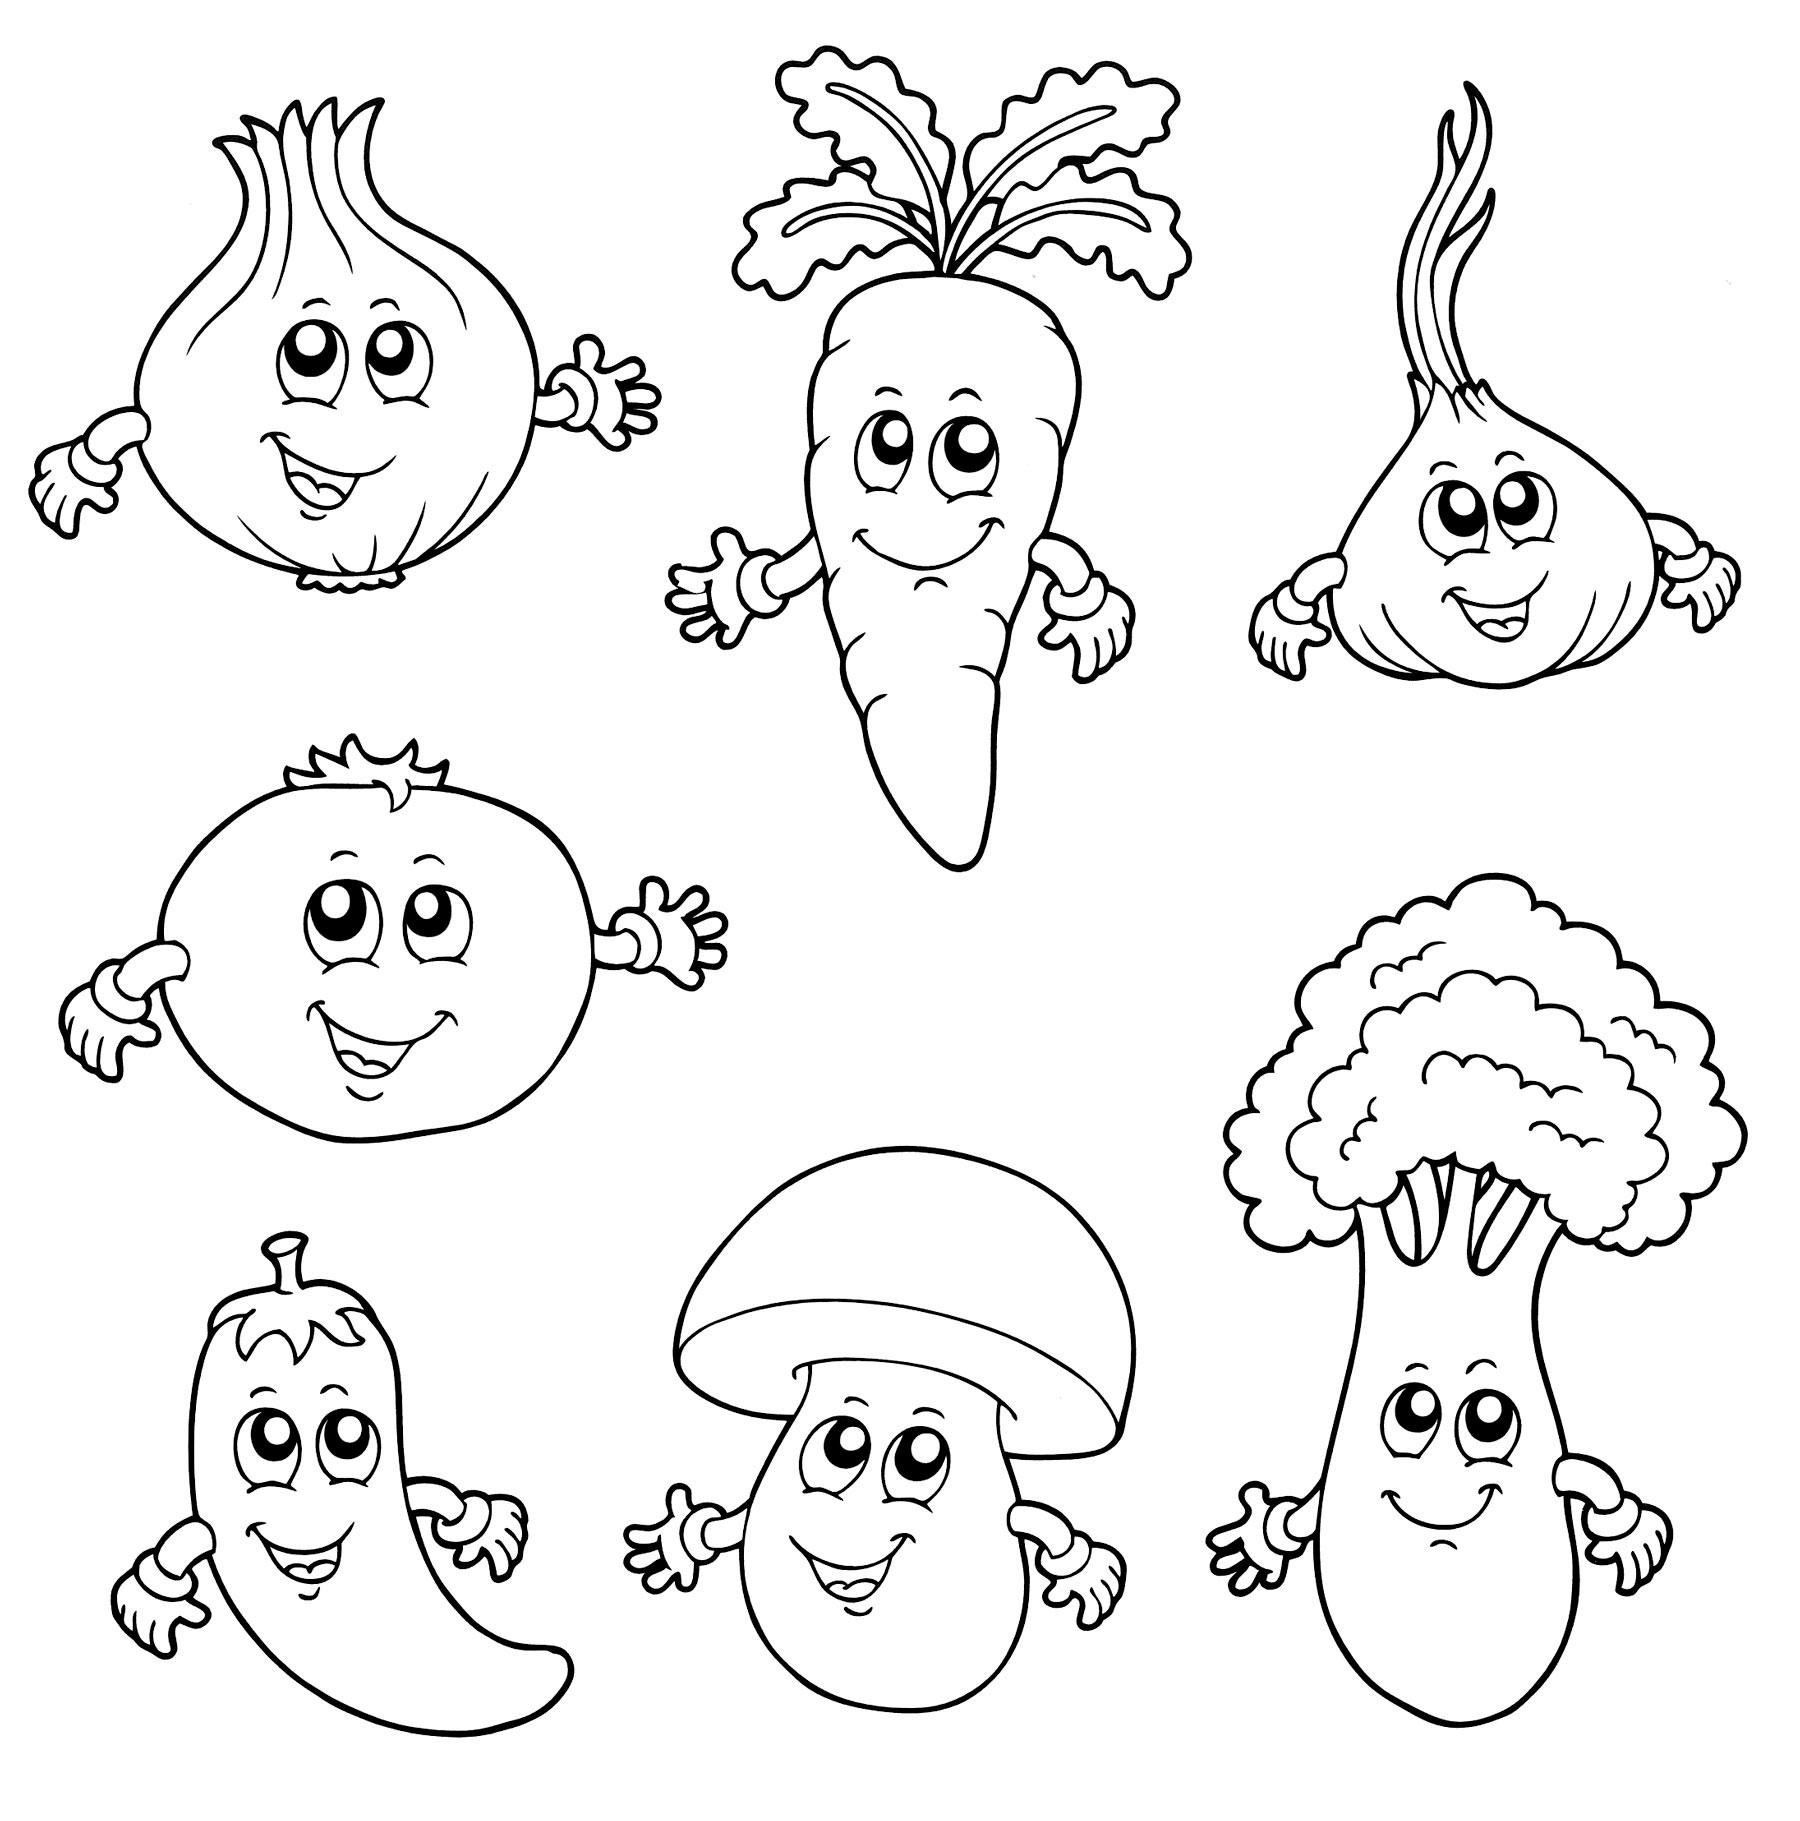 Раскраски овощей и фруктов для детей - распечатать бесплатно